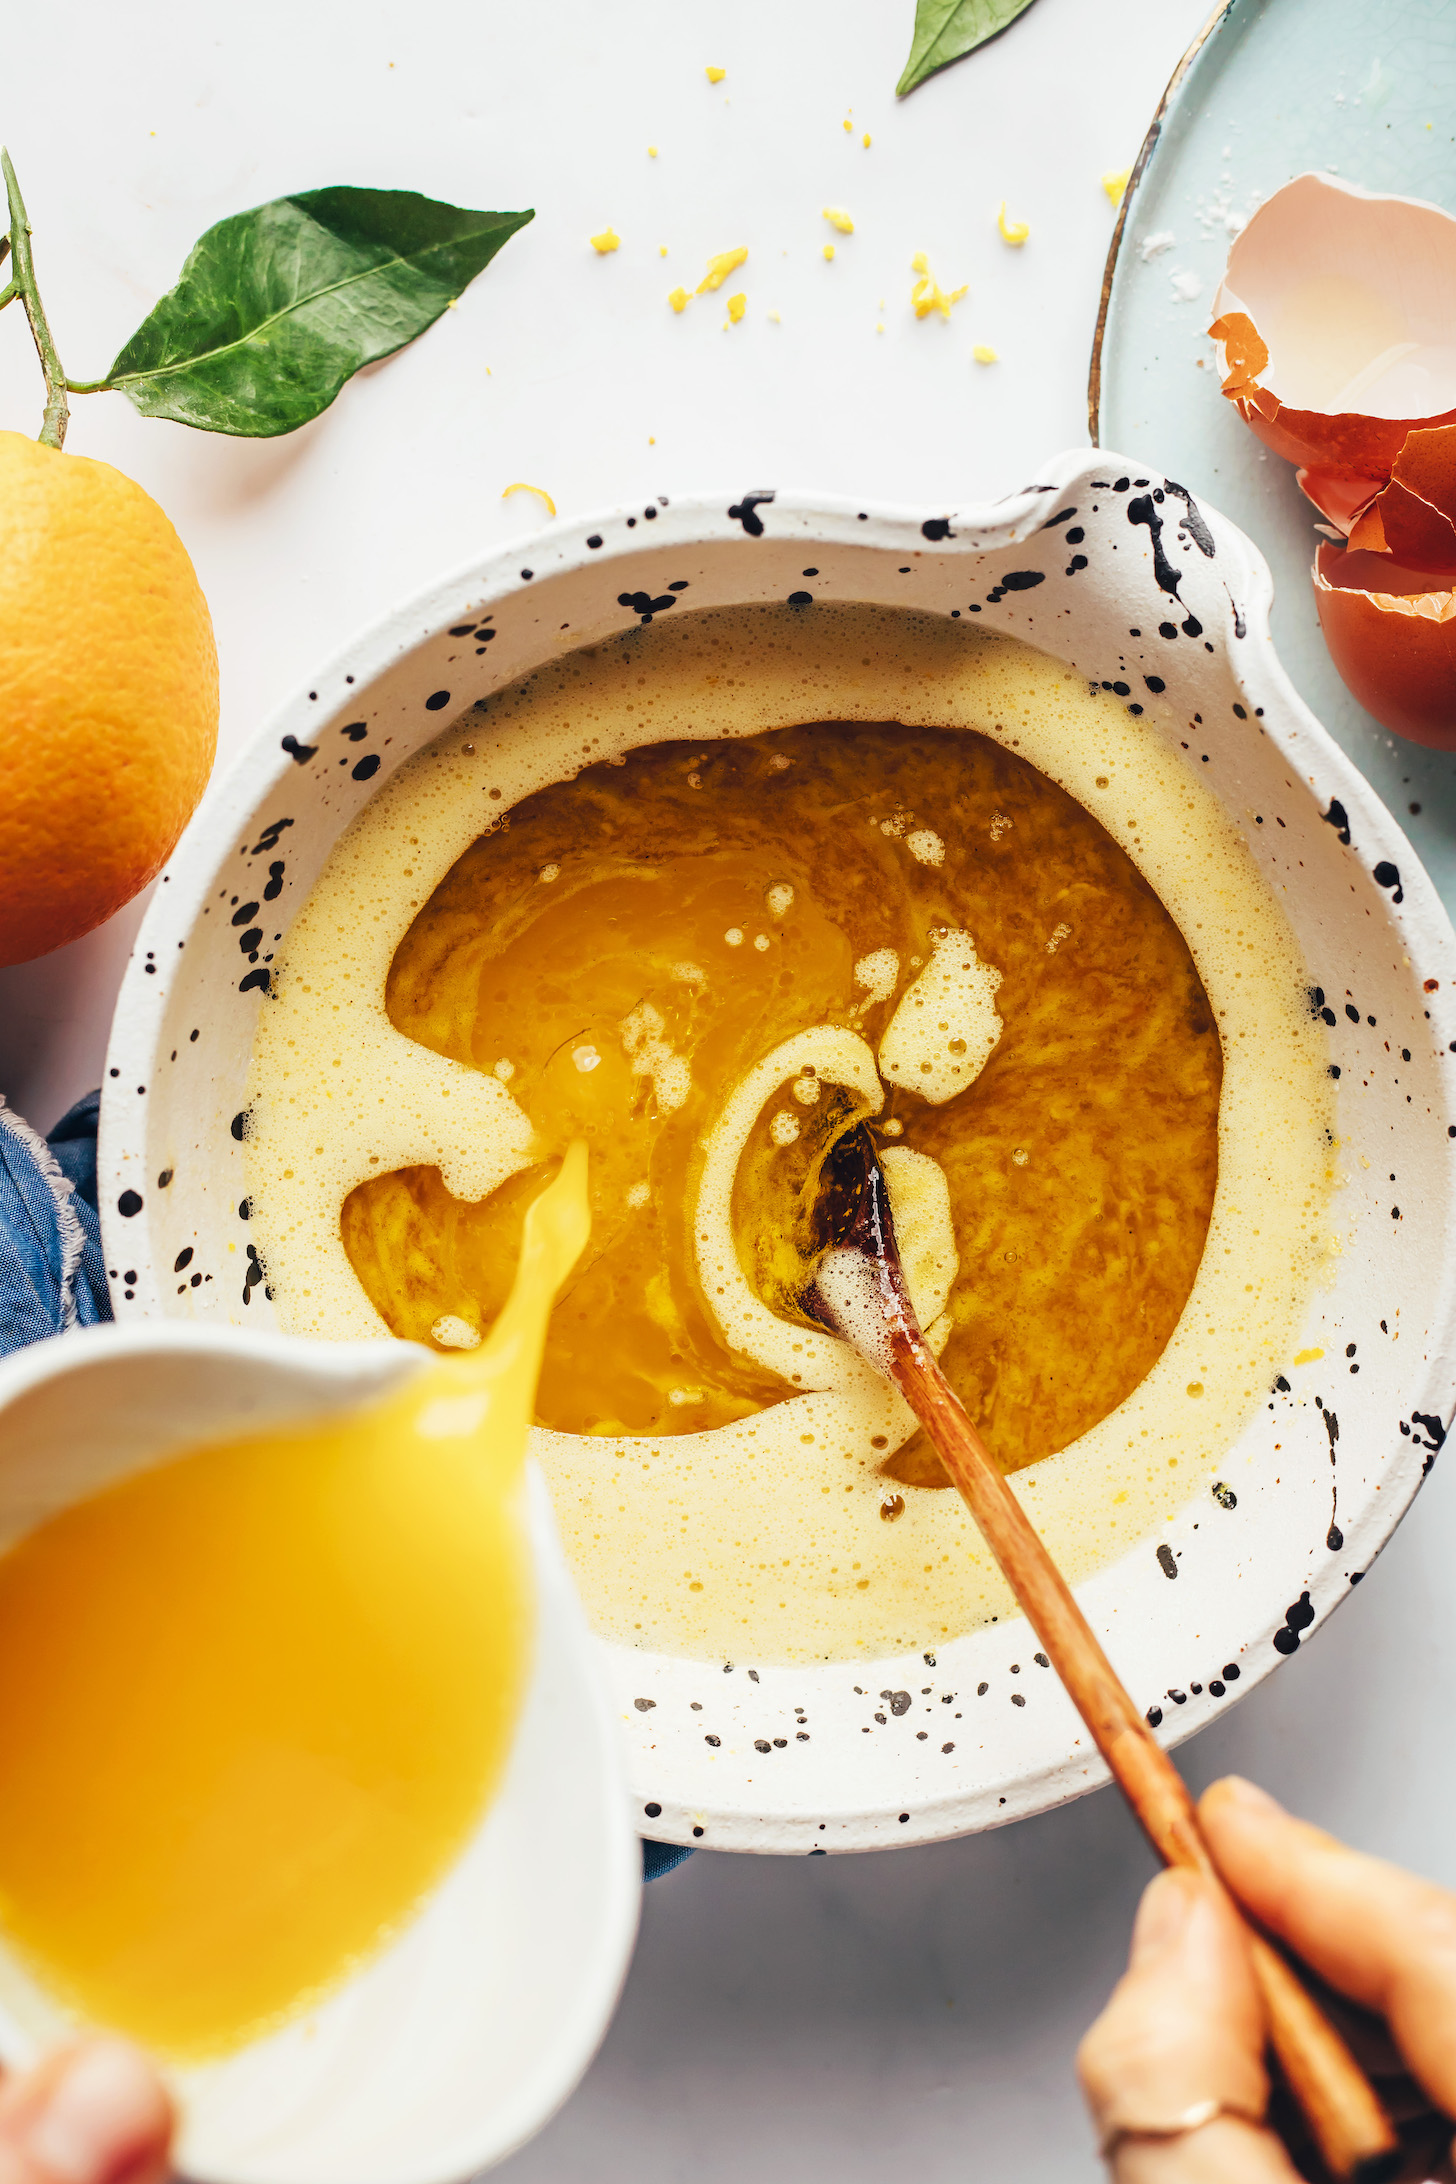 Verter jugo de naranja en un recipiente con otros ingredientes húmedos